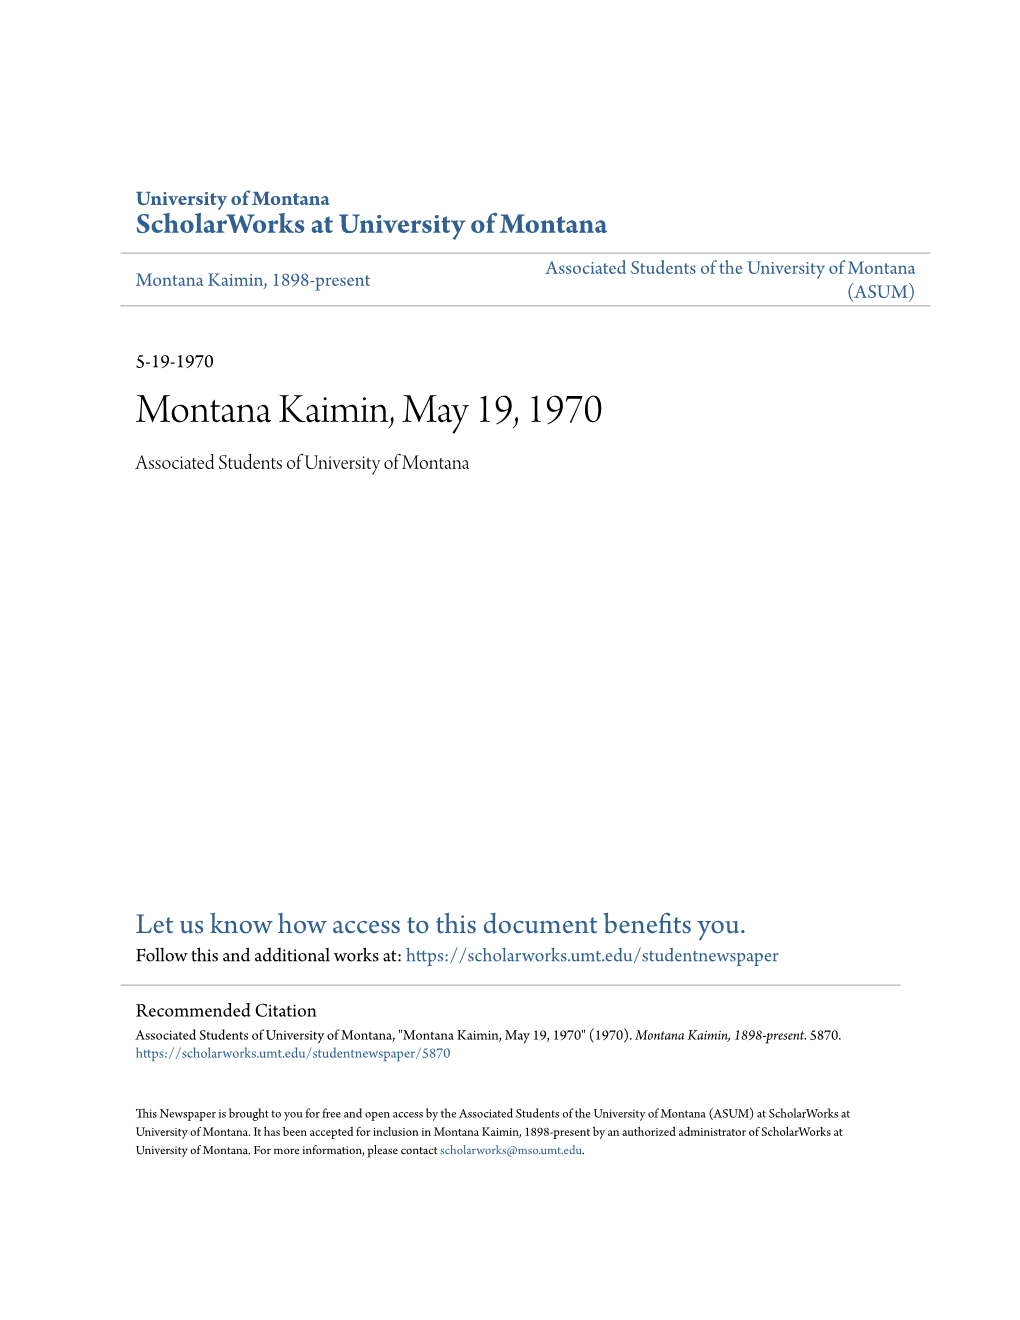 Montana Kaimin, May 19, 1970 Associated Students of University of Montana